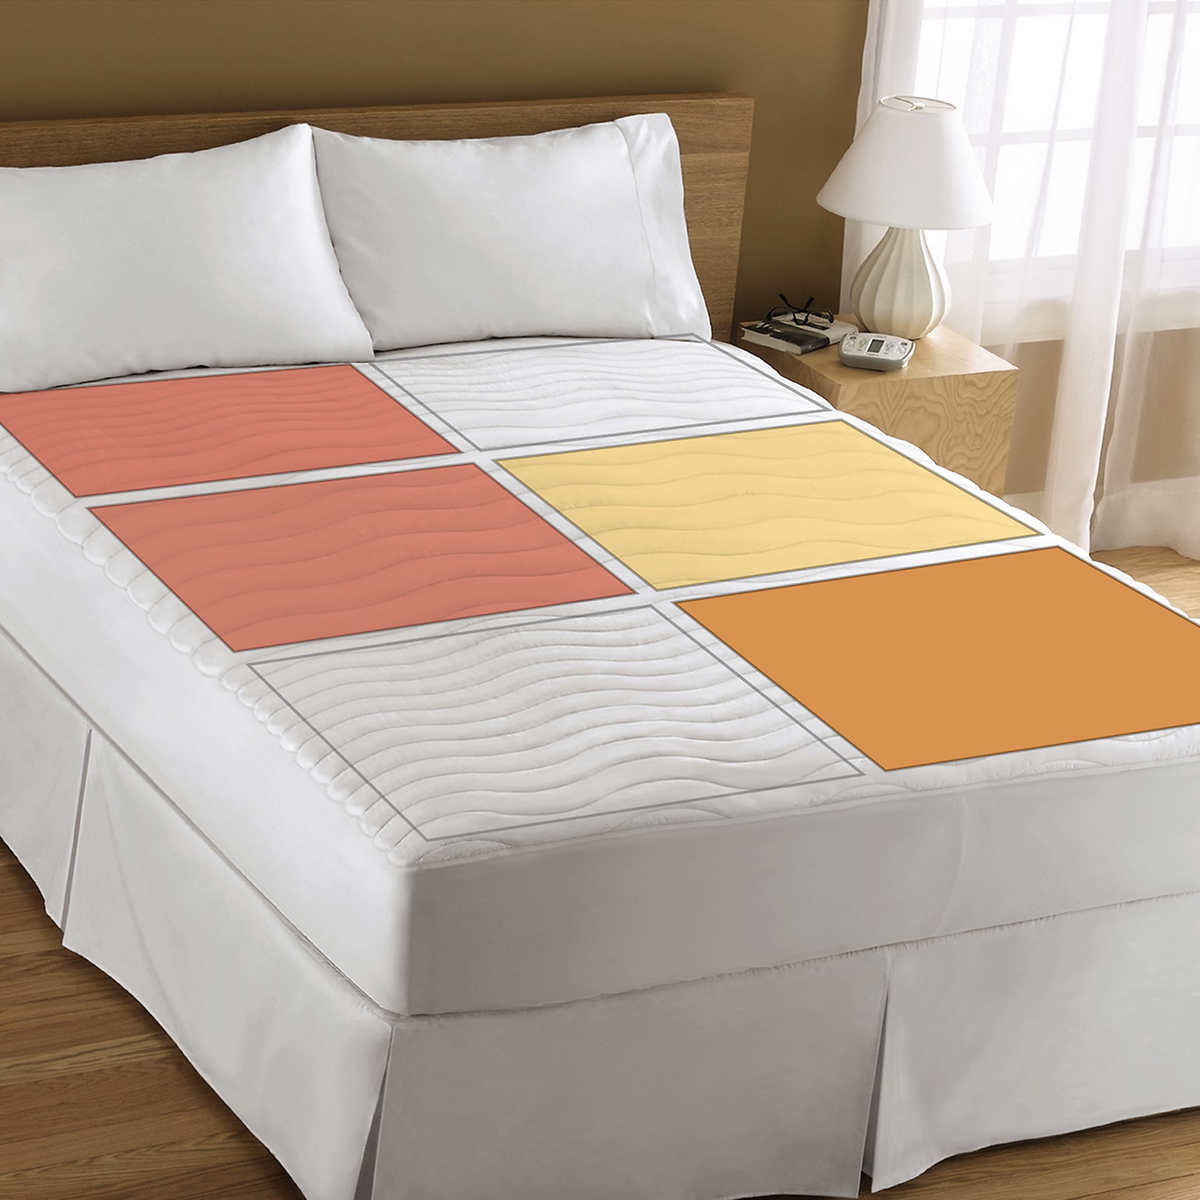 bed mattress price in qatar